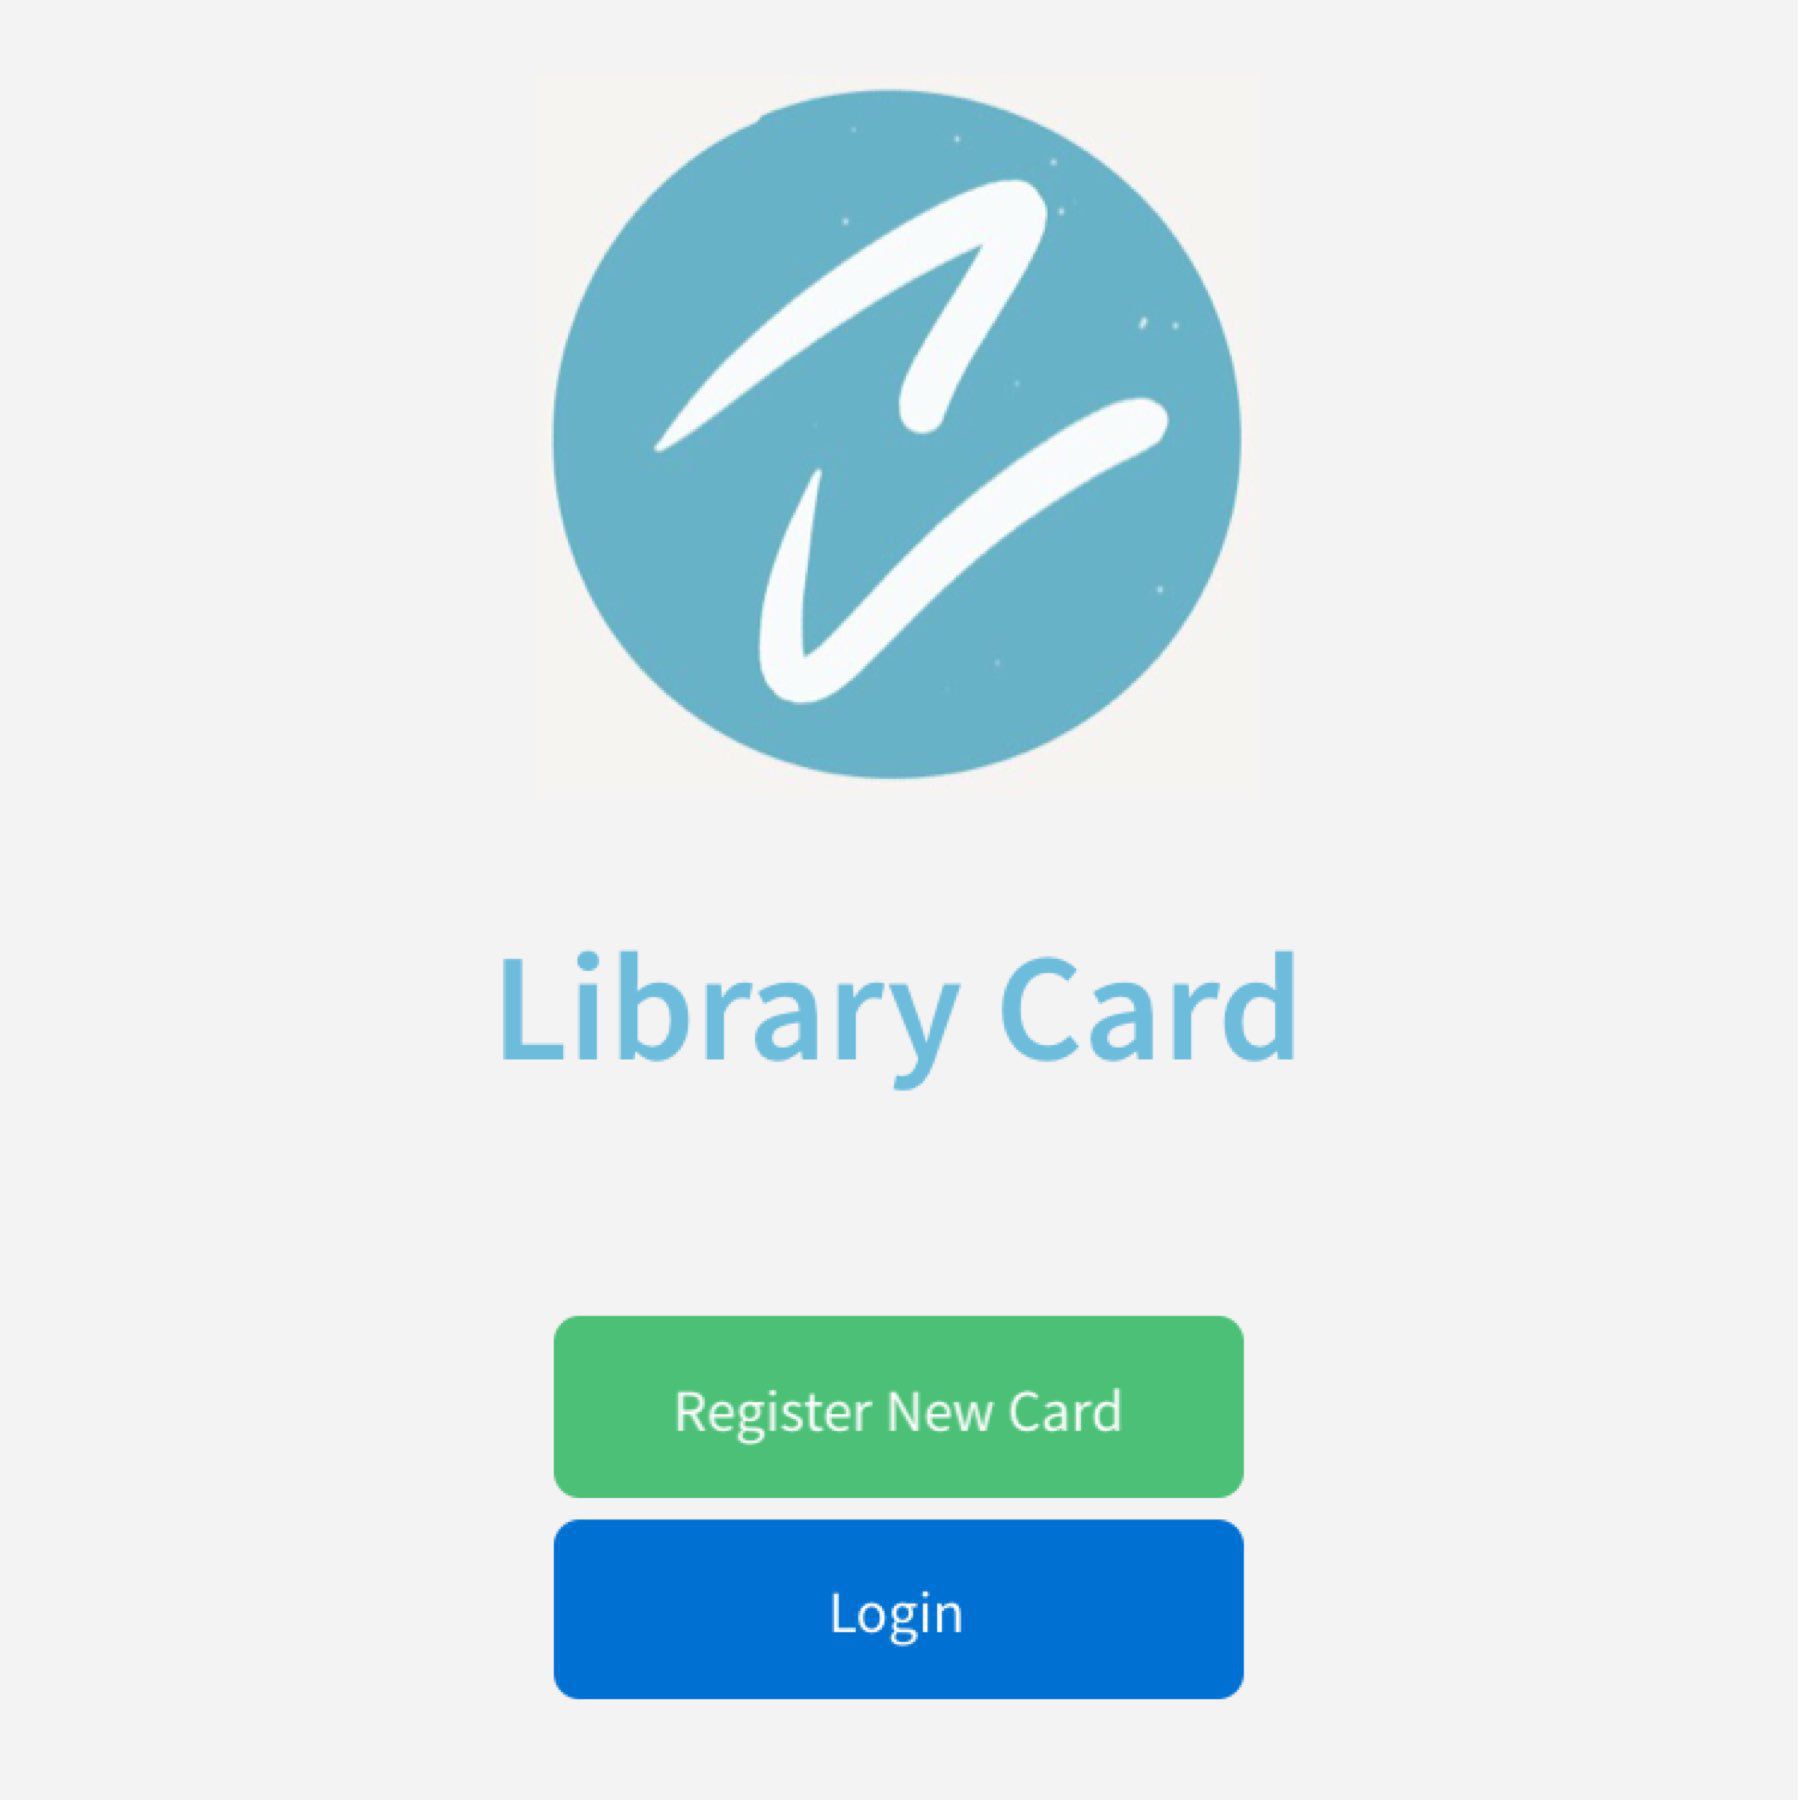 Library Card app concept landing screen